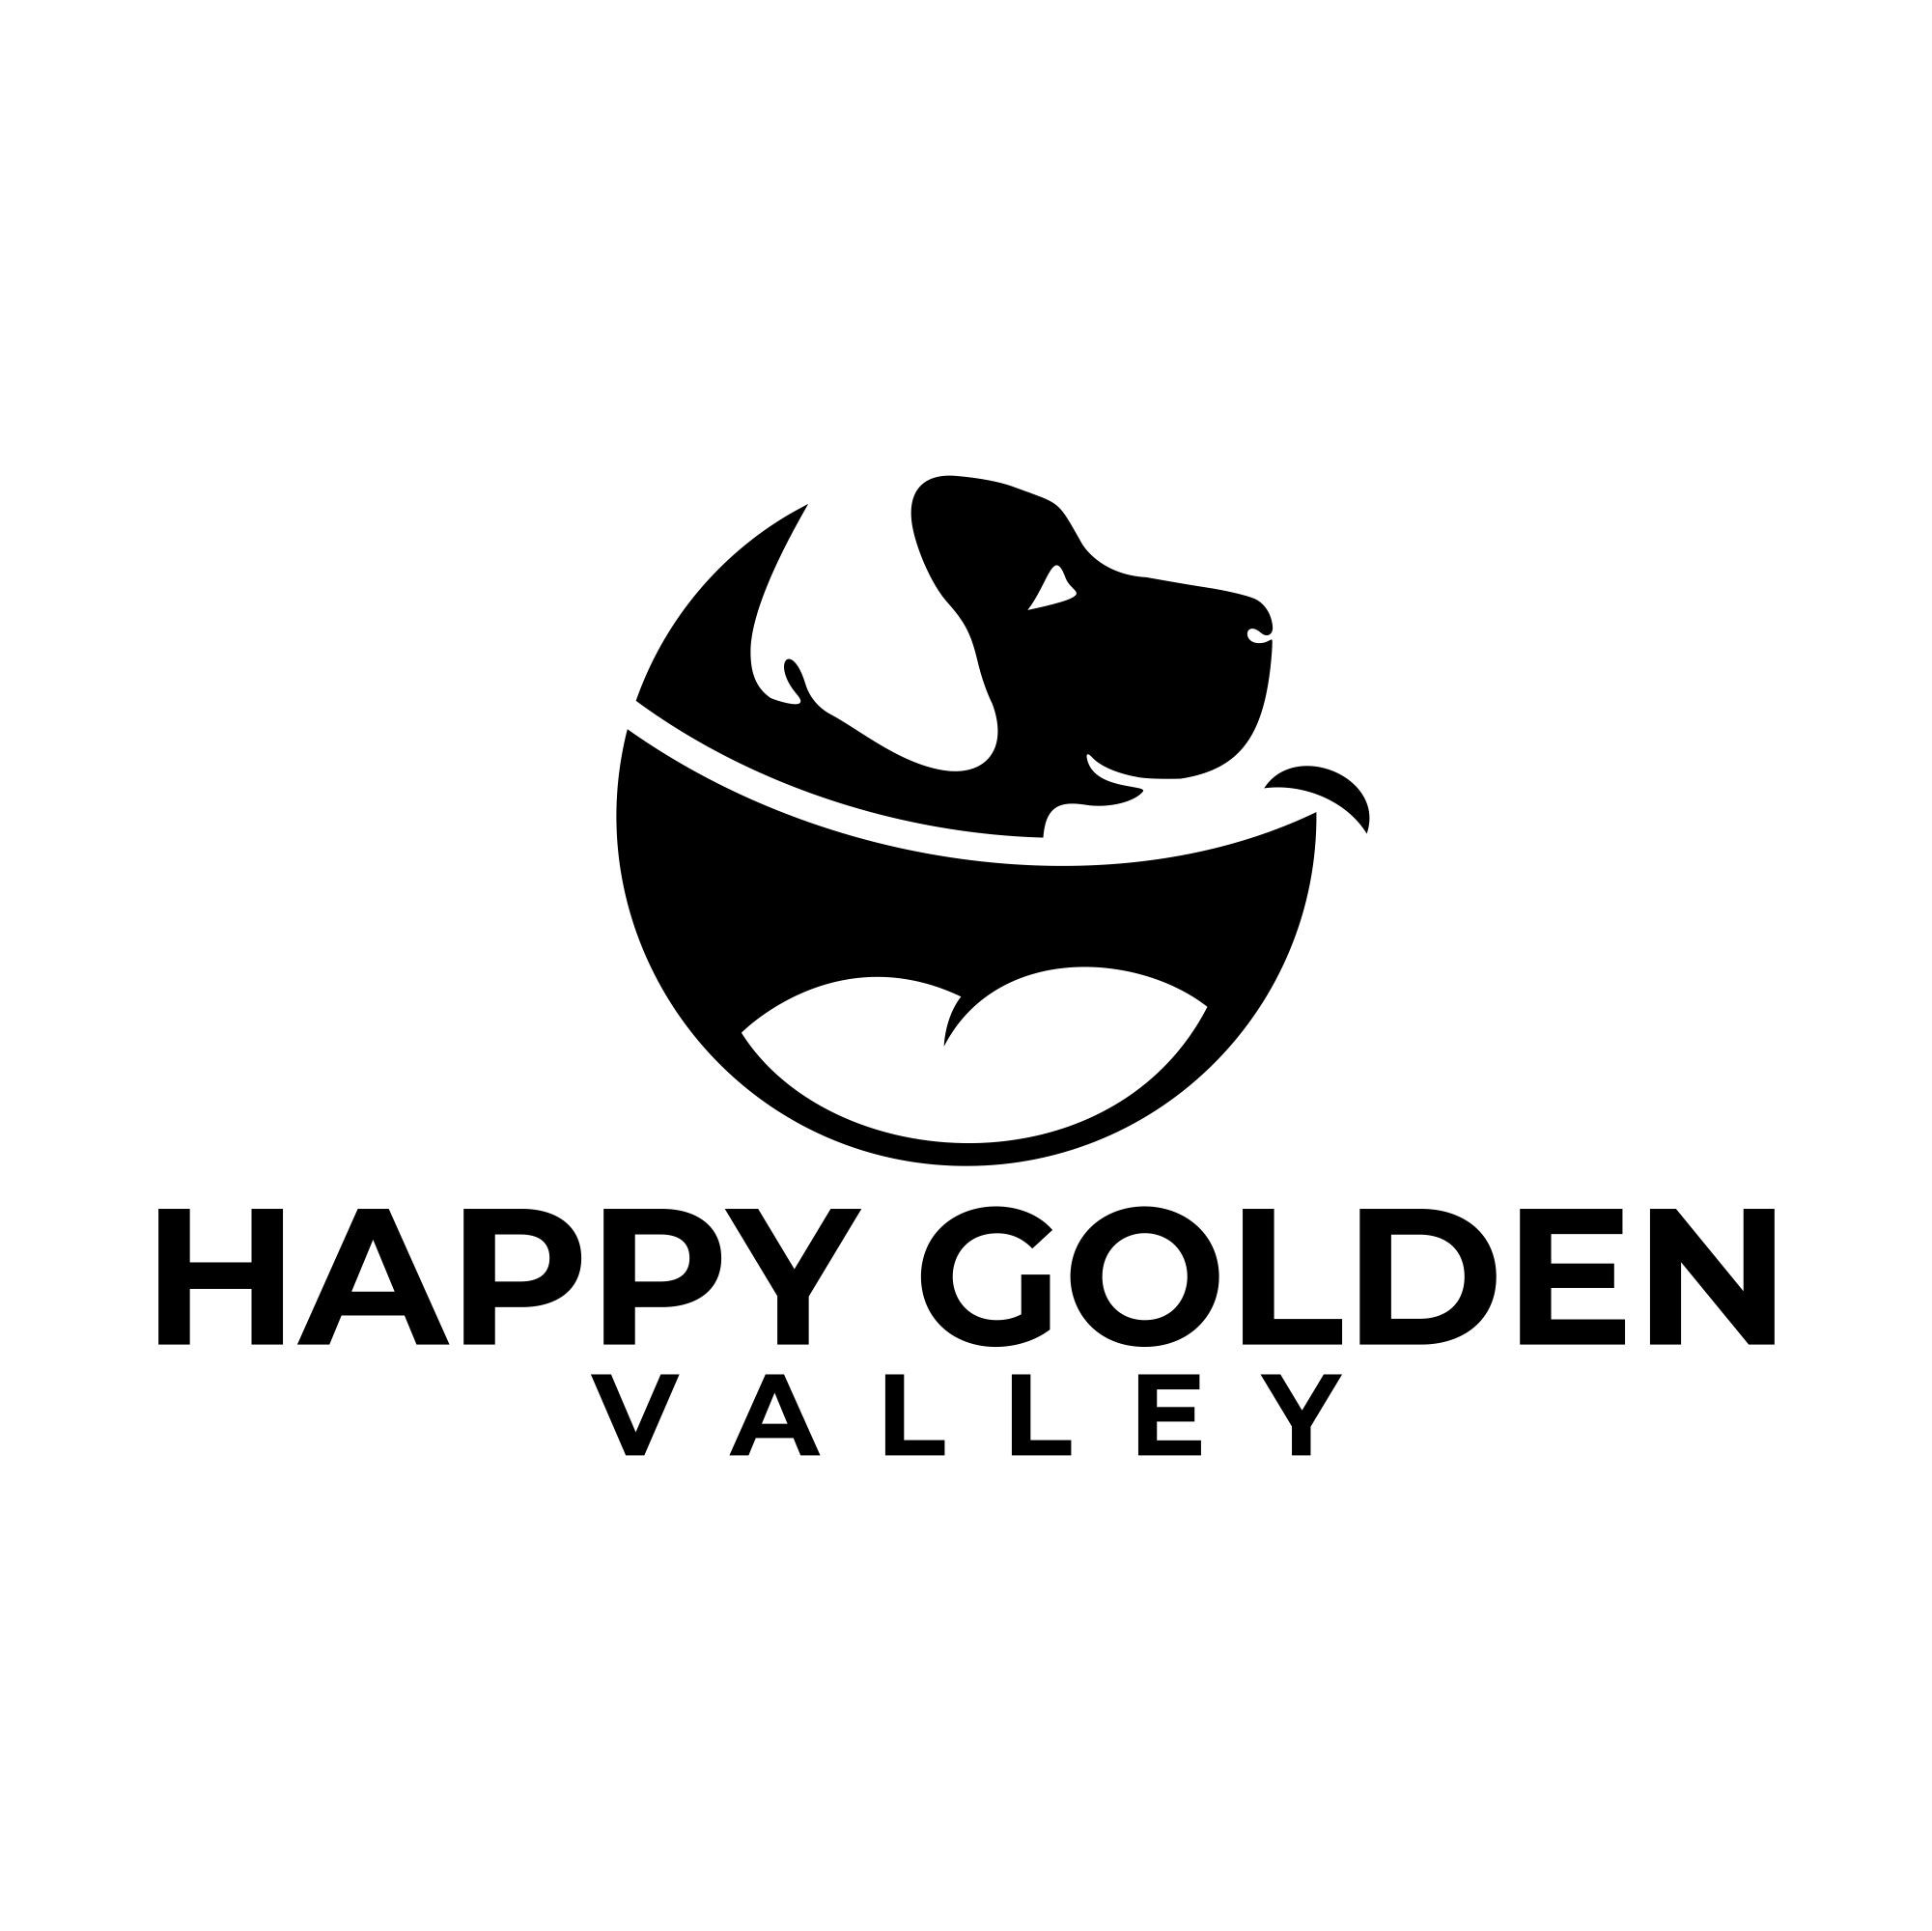 Of Happy Golden Valley